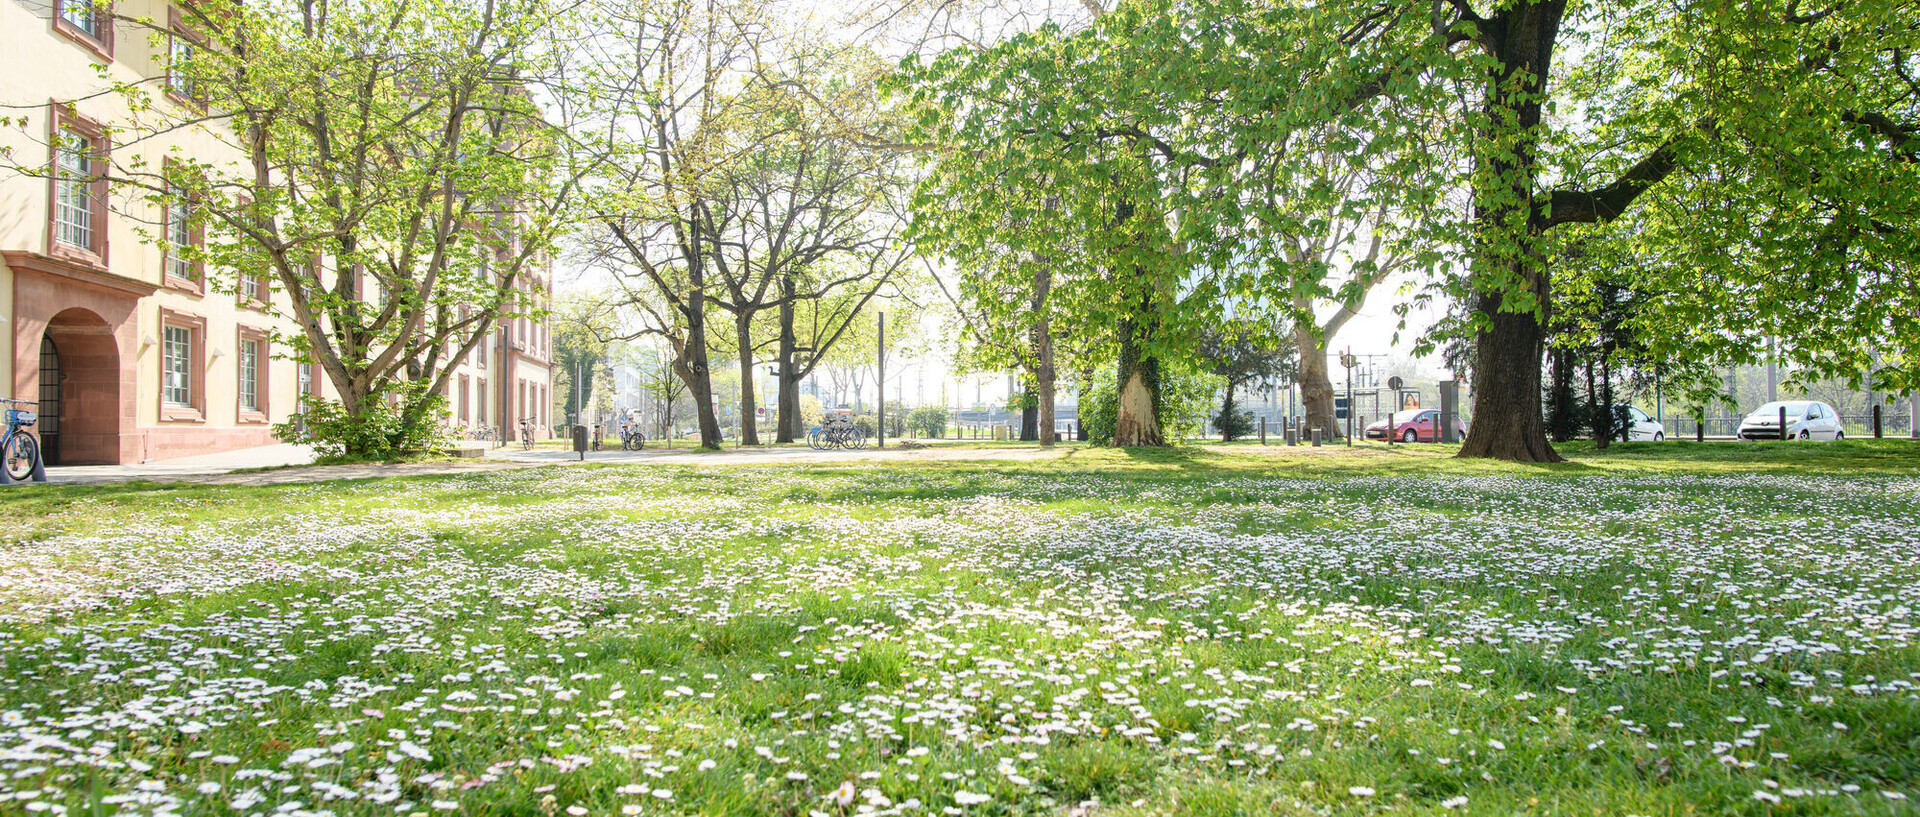 Das Bild zeigt eine grüne Wiese bei der Universität Mannheim